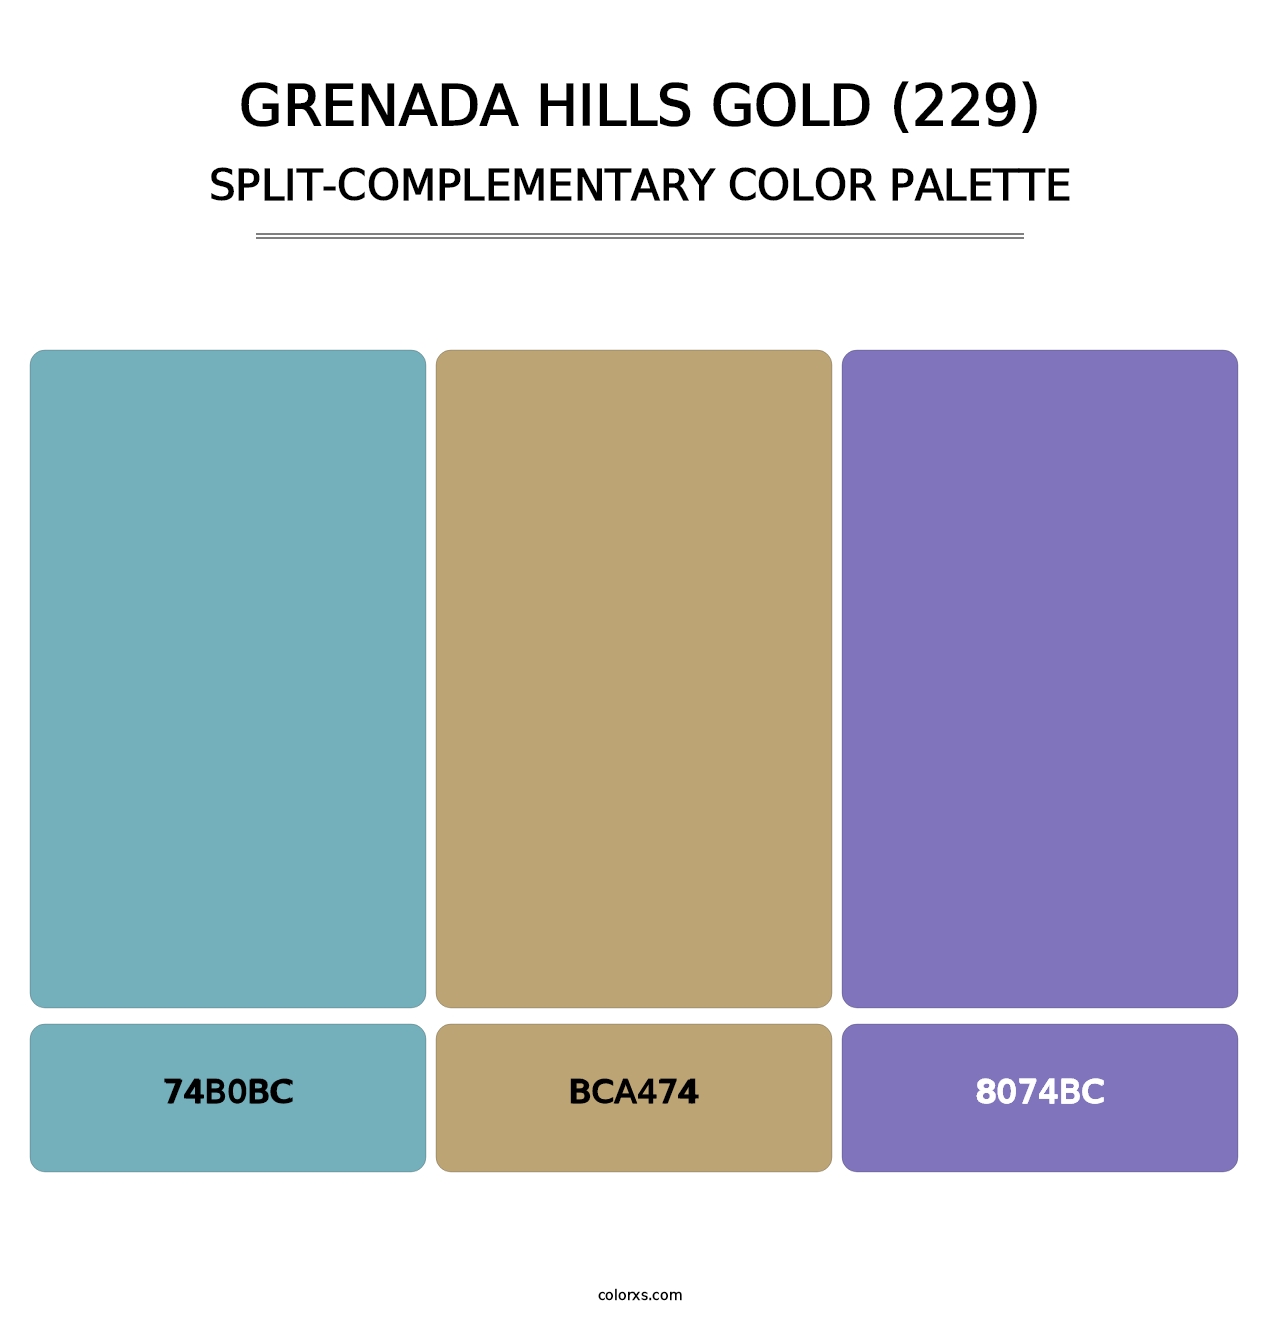 Grenada Hills Gold (229) - Split-Complementary Color Palette